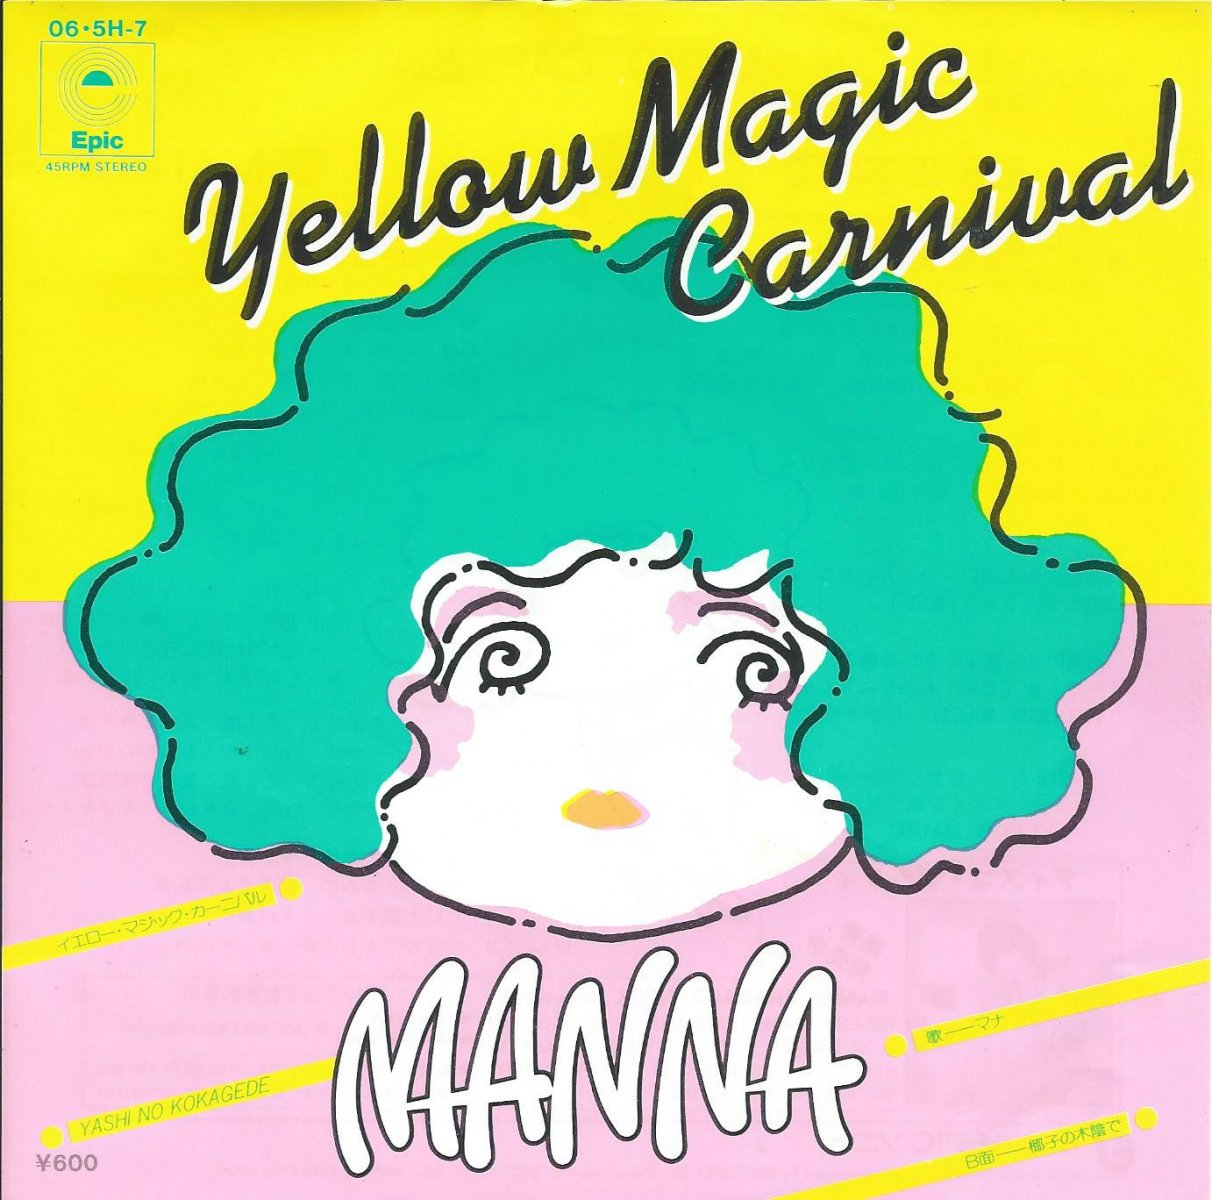 マナ MANNA / イエロー・マジック・カーニバル YELLOW MAGIC CARNIVAL 